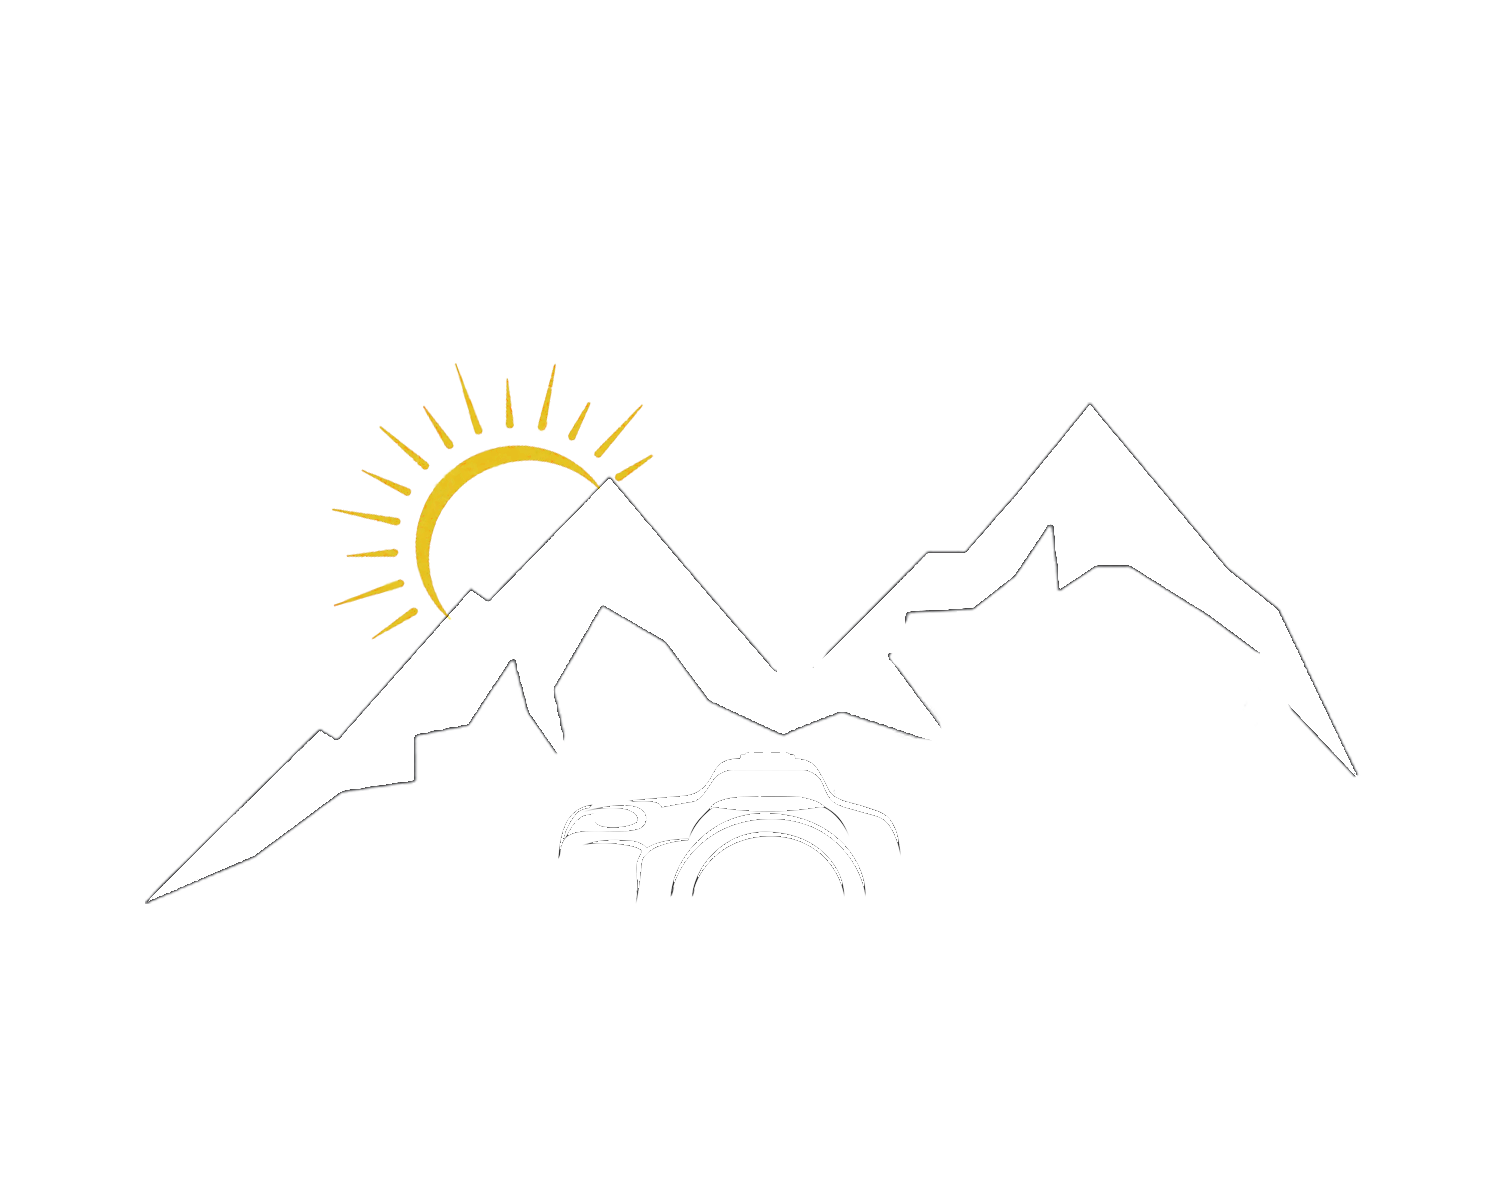 Sundance Photo